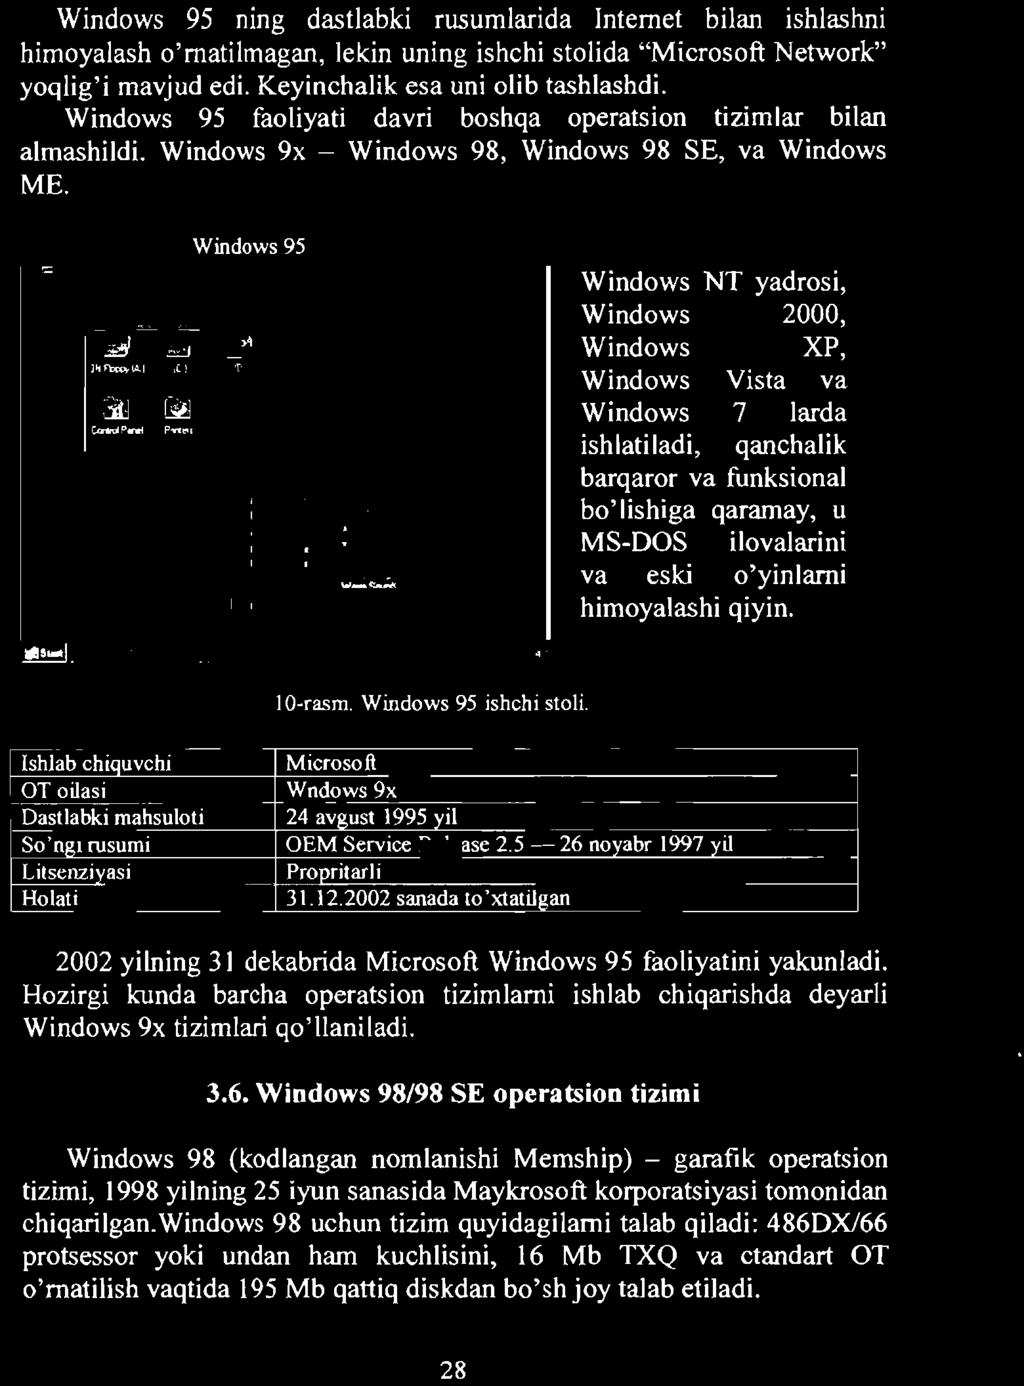 Windows 95 Windows NT yadrosi, Windows 2000, Windows XP, Windows Vista va Windows 7 larda ishlatiladi, qanchalik barqaror va funksional bo'lishiga qaramay, u MS-DOS ilovalarini va eski o'yinlami